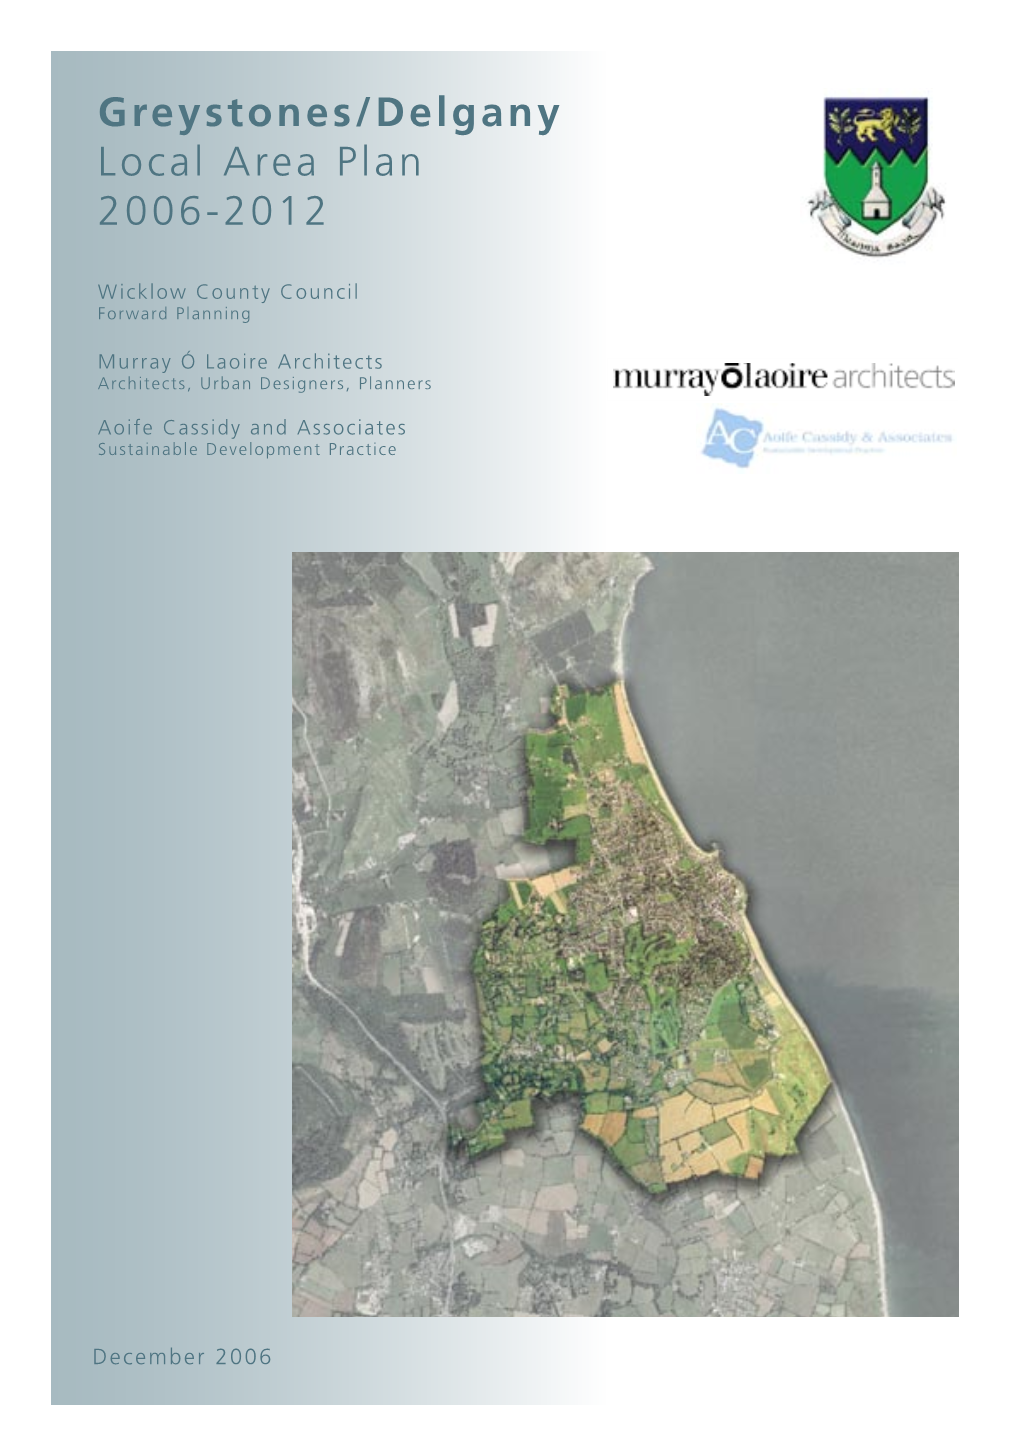 Greystones/Delgany Local Area Plan 2006-2012